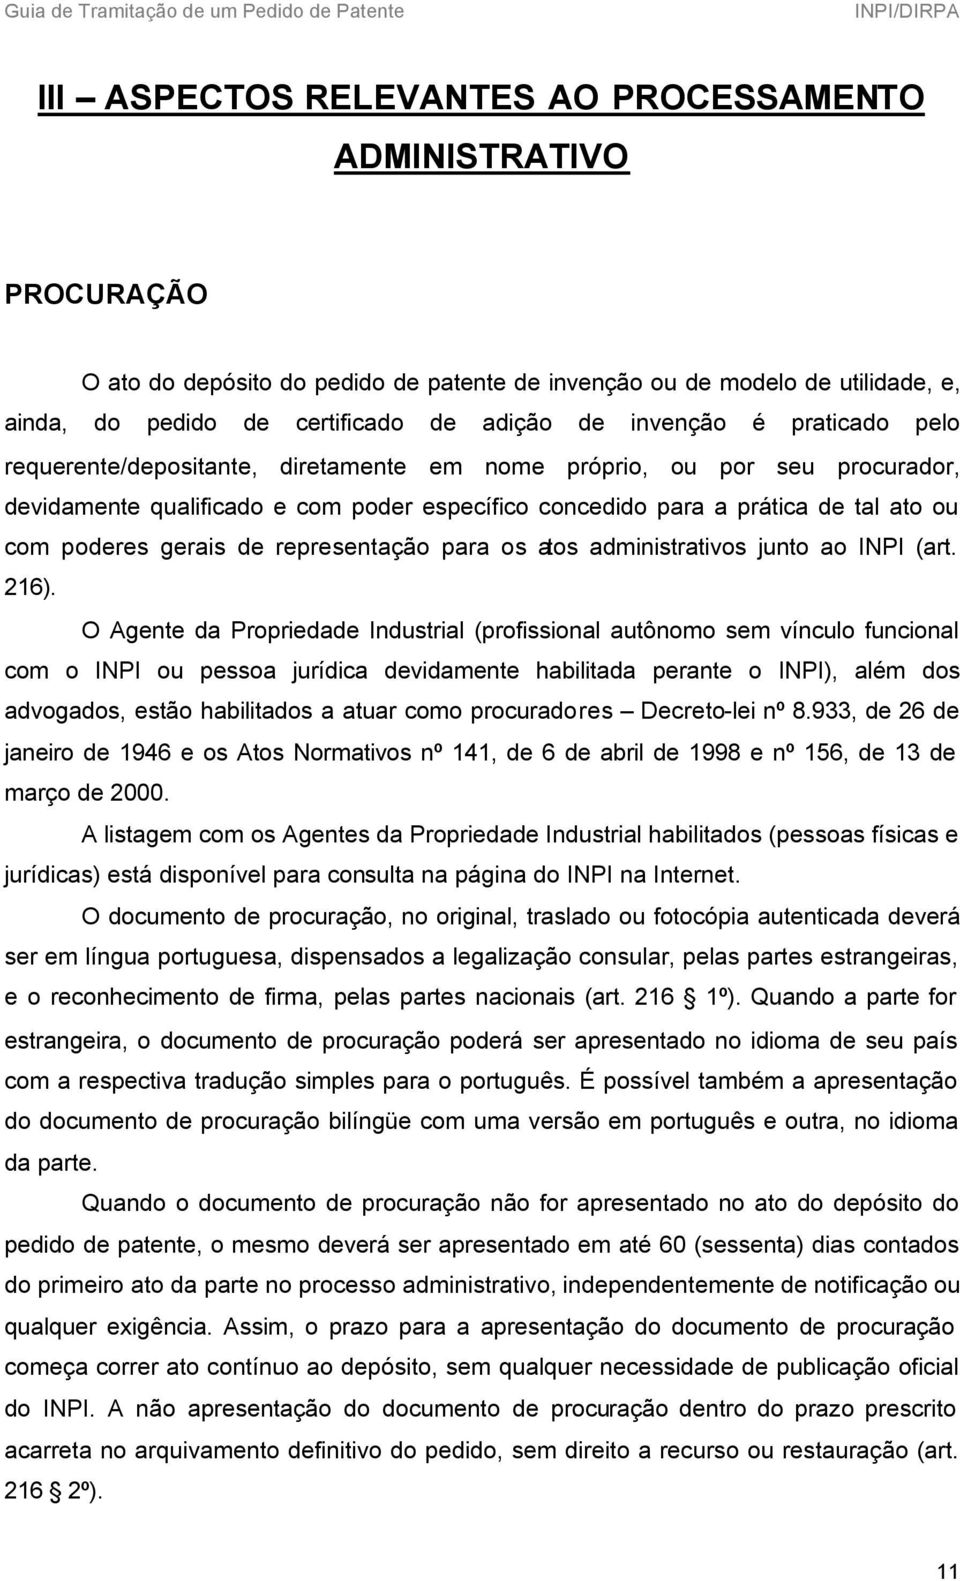 gerais de representação para os atos administrativos junto ao INPI (art. 216).